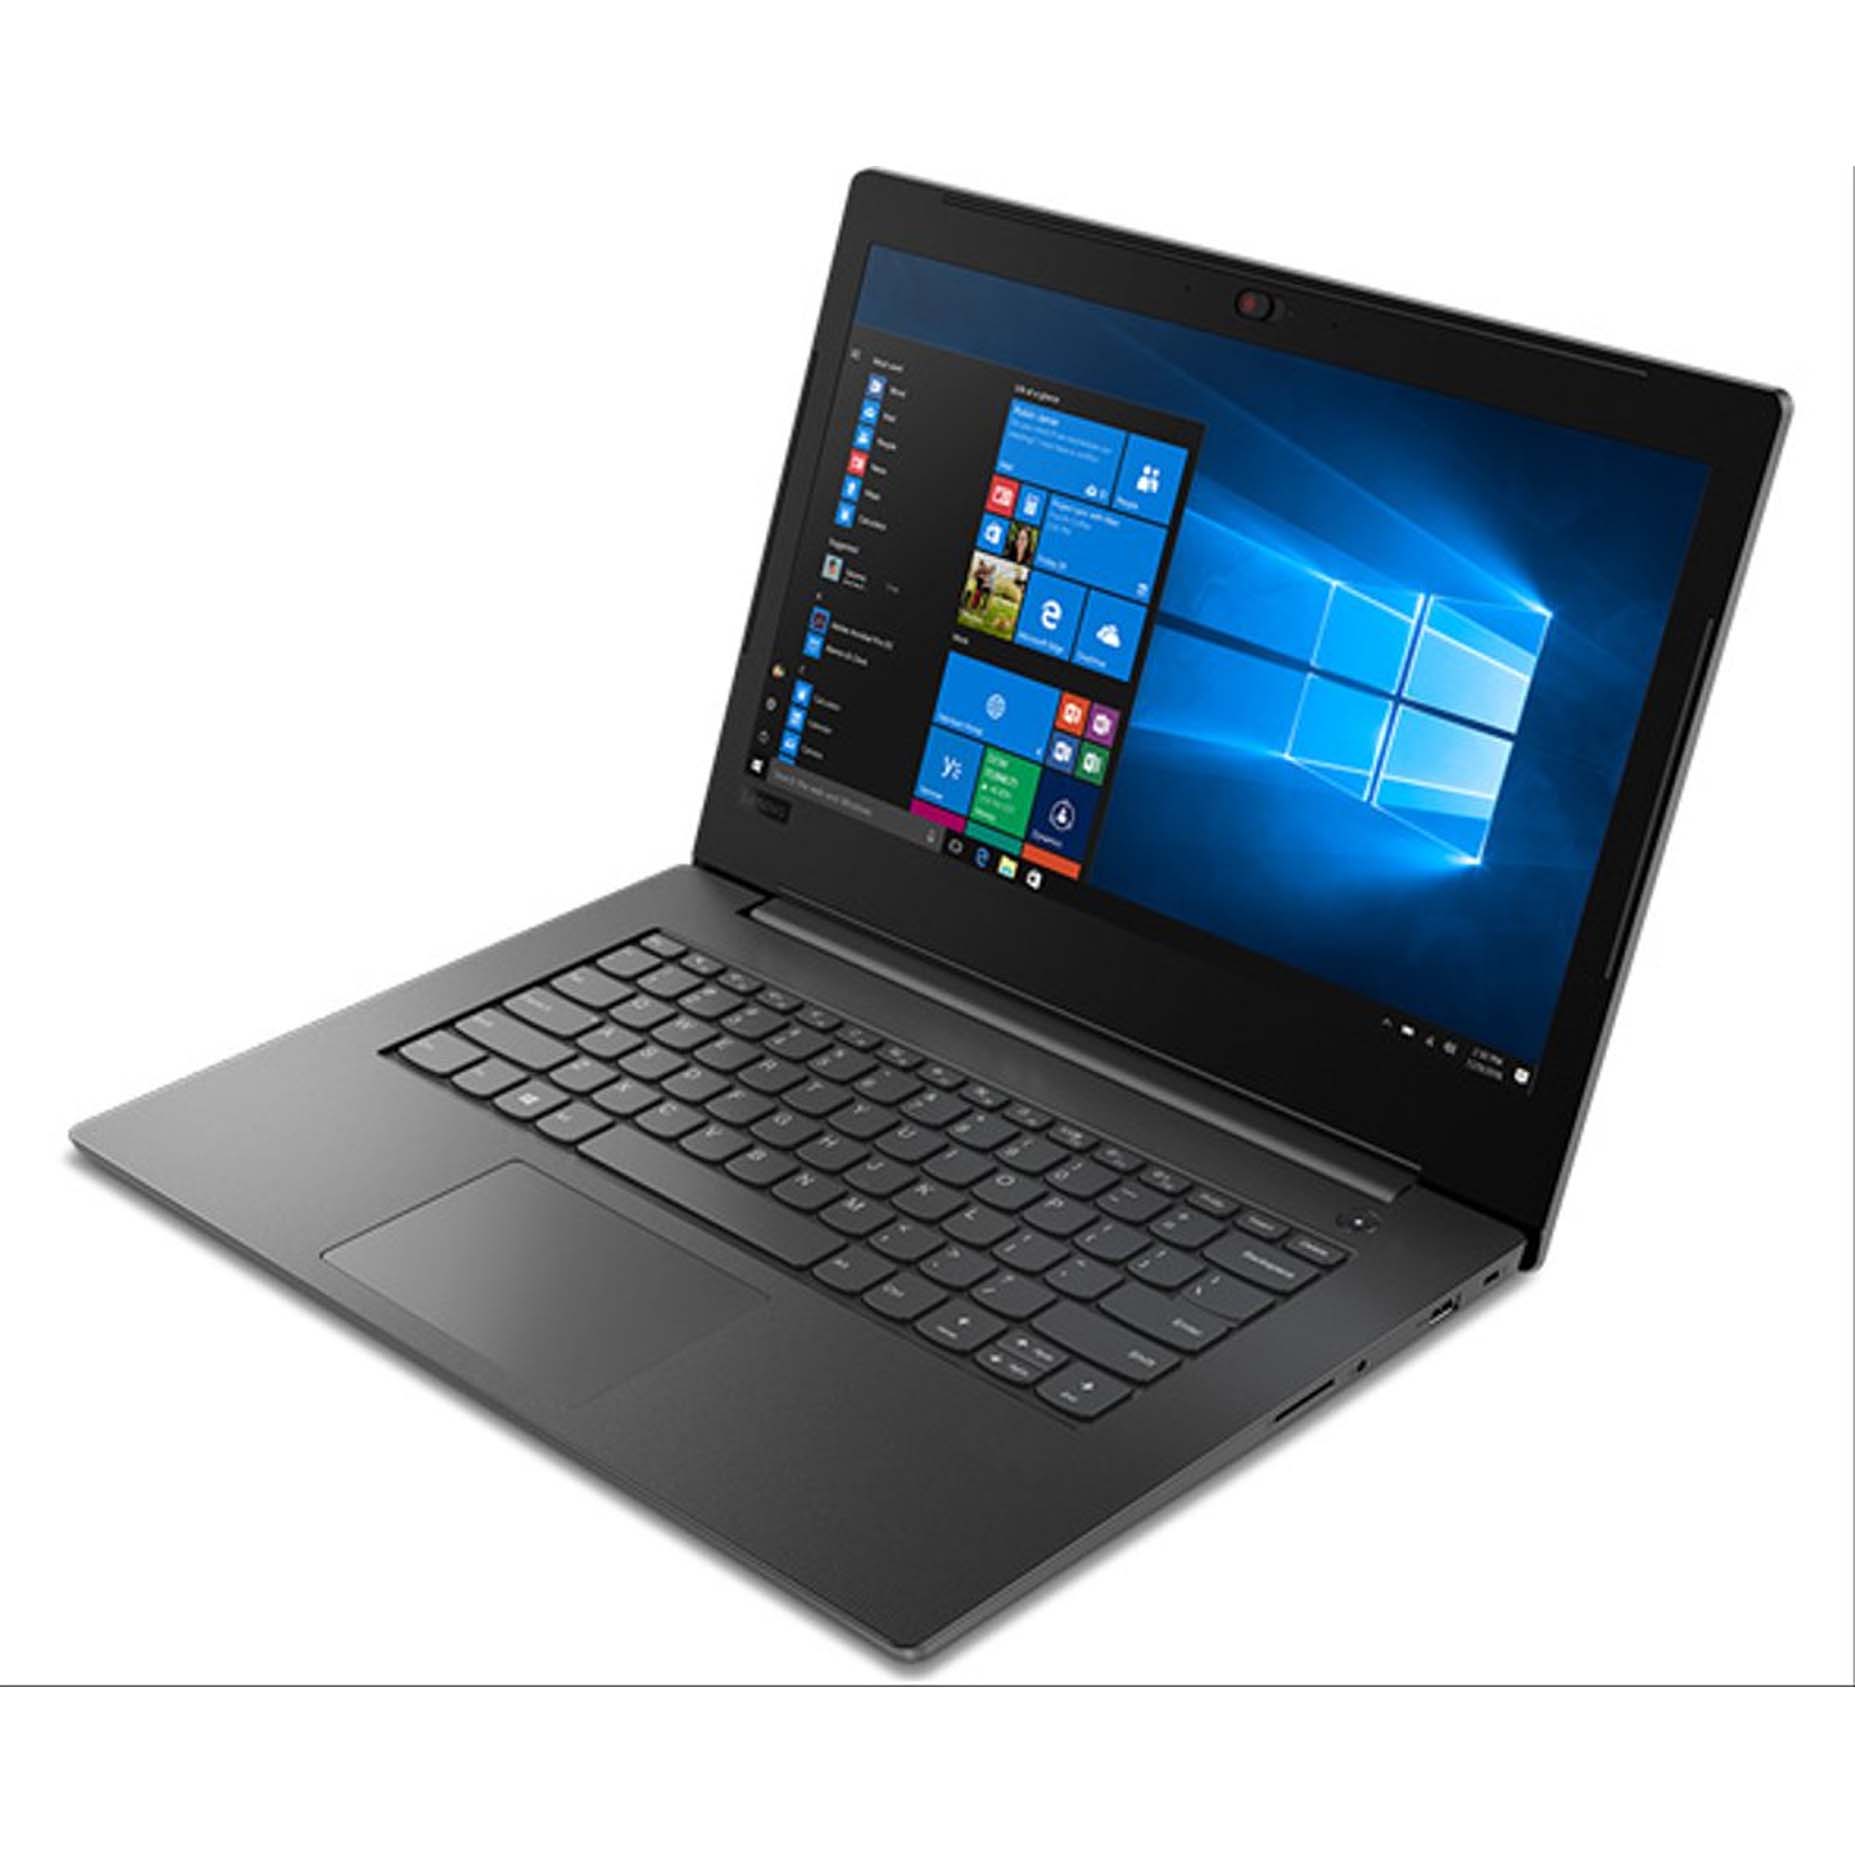 Harga Lenovo Ideapad V130-HFID Laptop Intel Core i3-6006 4GB 1TB VGA Radeon 530 2GB DOS 14 inch Iron Grey